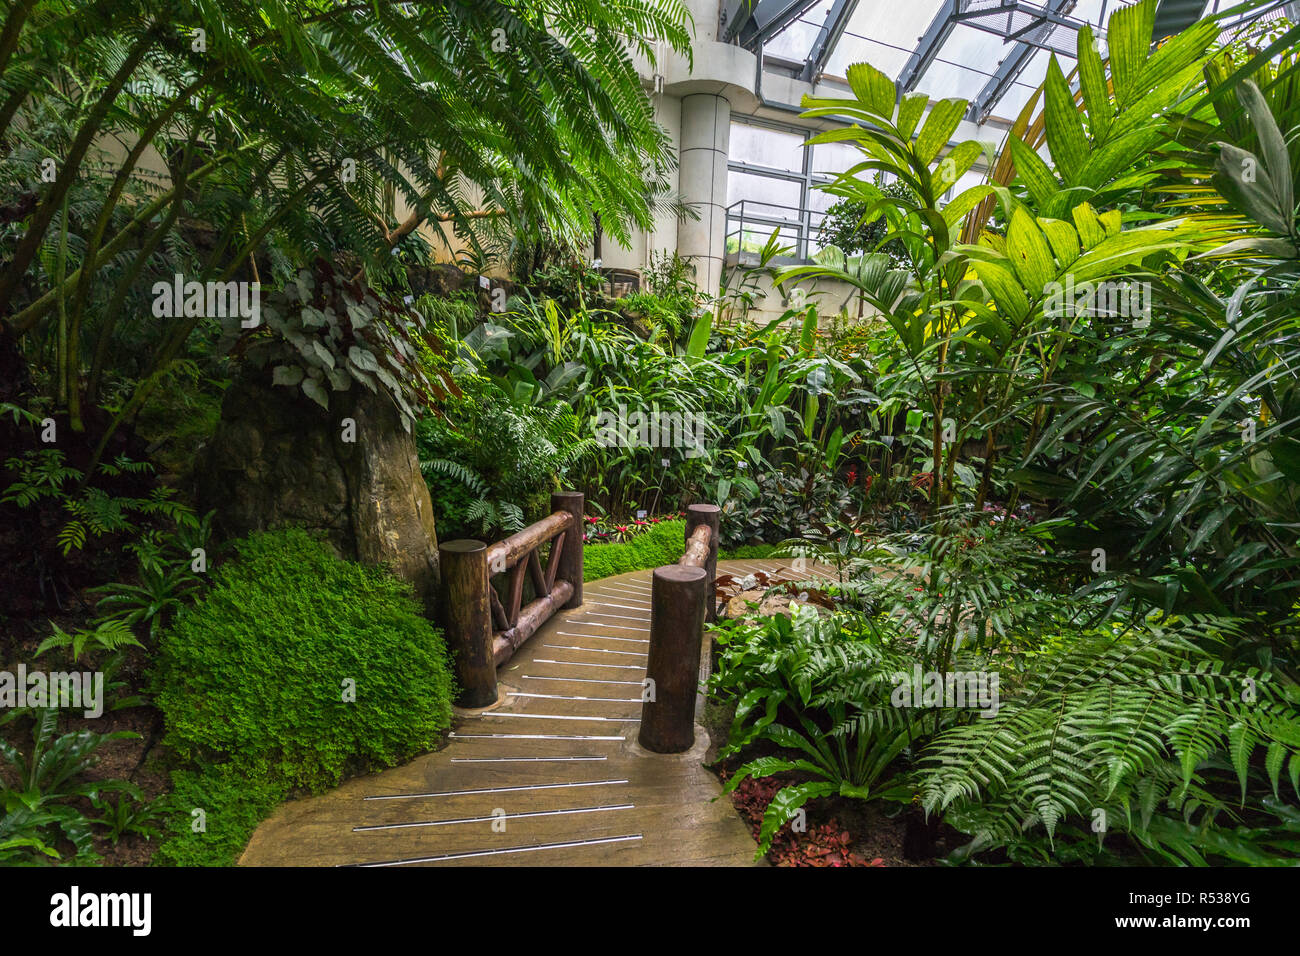 Au Conservatoire siteforsgate Country Park Hong Kong montrant des plantes tropicales et le feuillage dans la jungle humide Maison Usine Banque D'Images